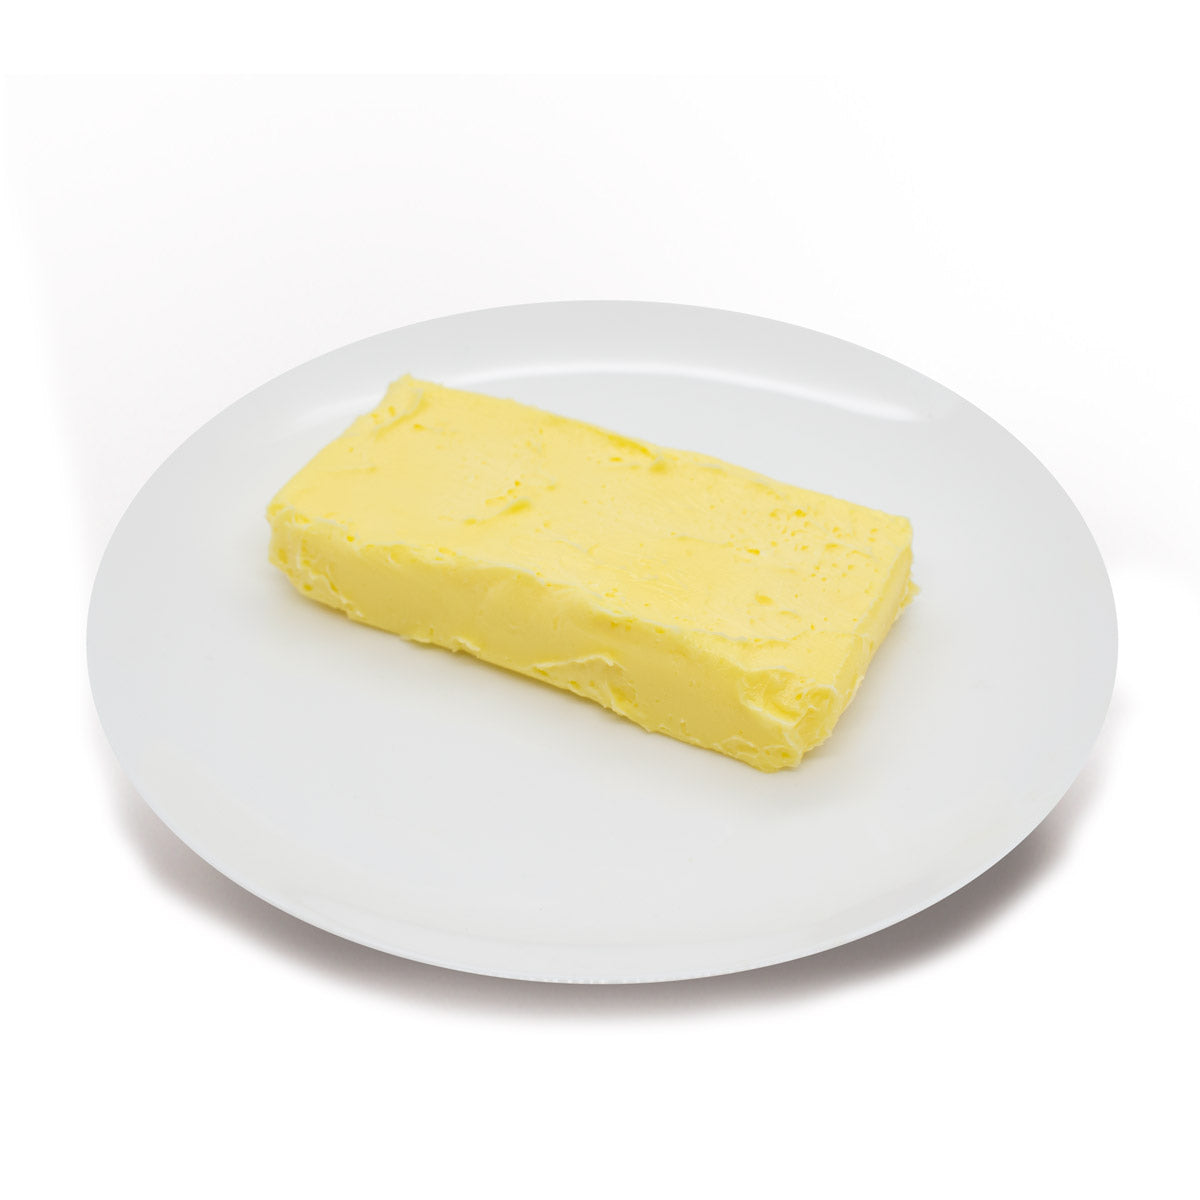 Mantequilla Pura 140 gr.  Ganadería sostenible. 100% nata de leche entera